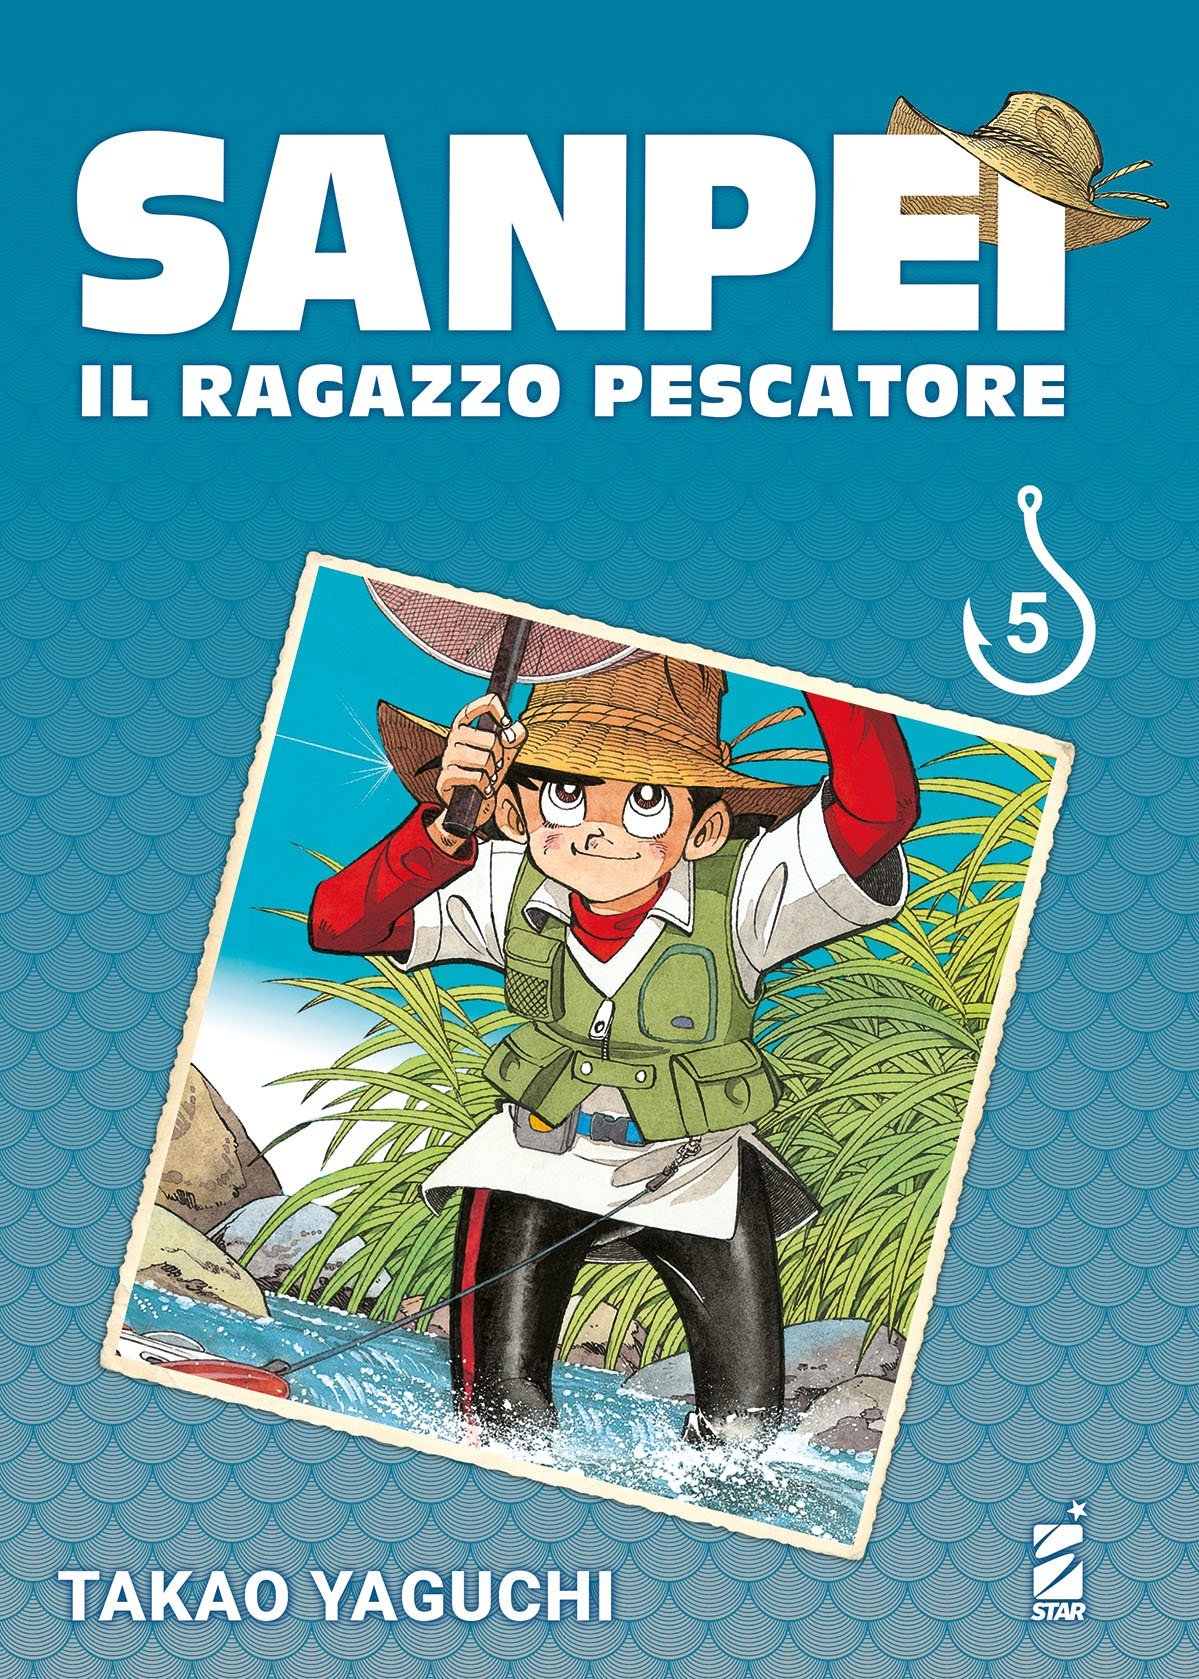 SANPEI IL RAGAZZO PESCATORE TRIBUTE EDITION 5 DI 12